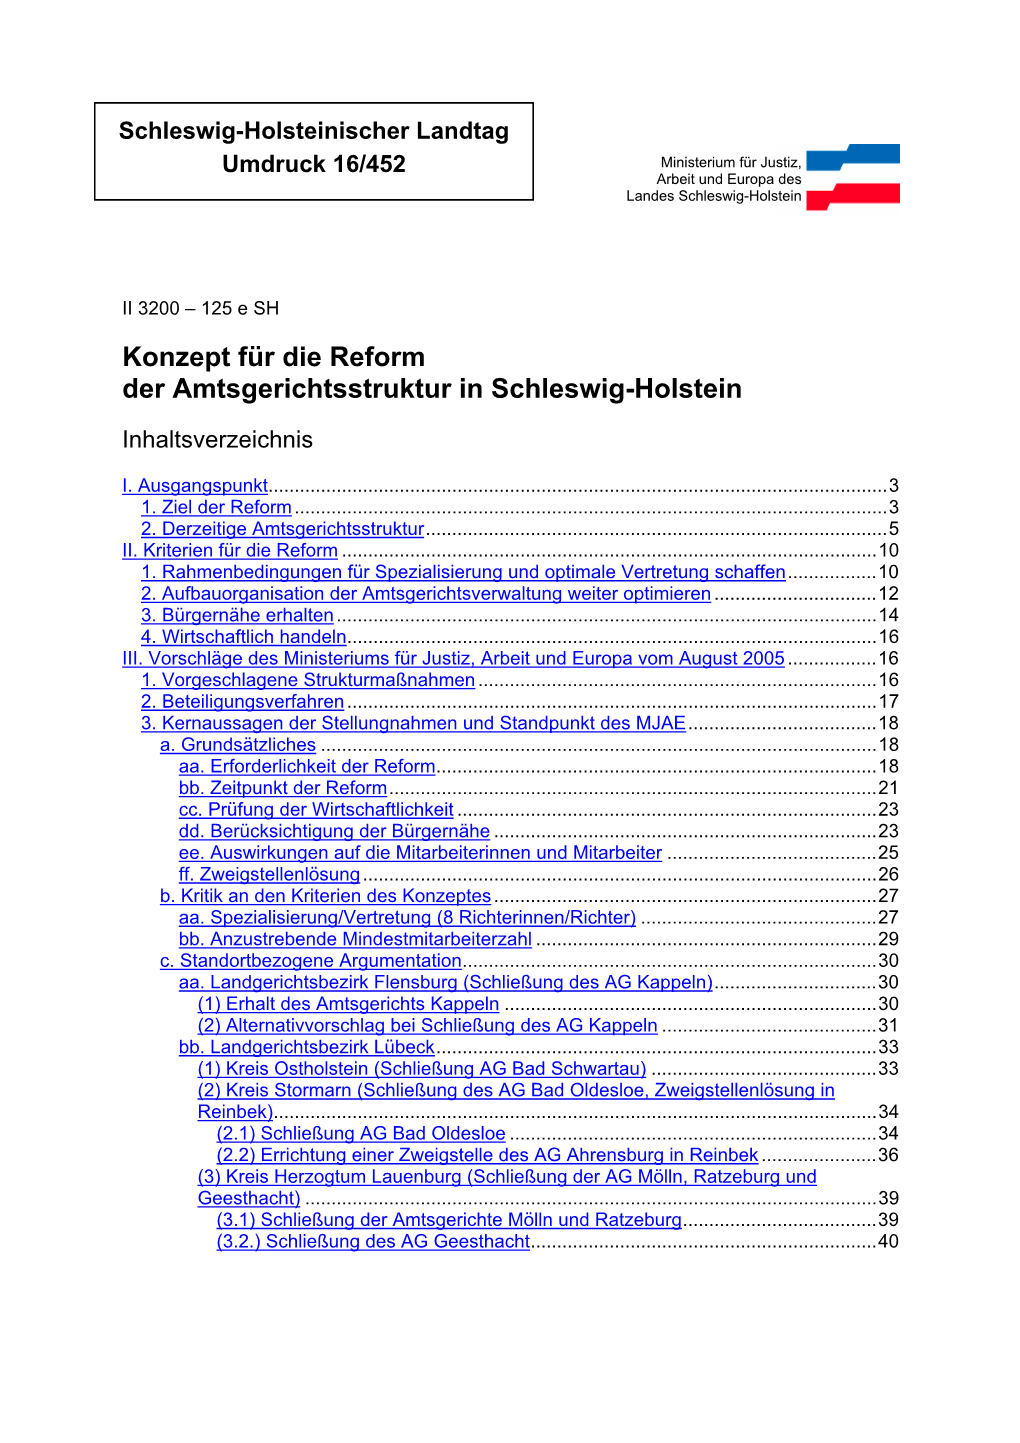 Konzept Für Die Reform Der Amtsgerichtsstruktur in Schleswig-Holstein